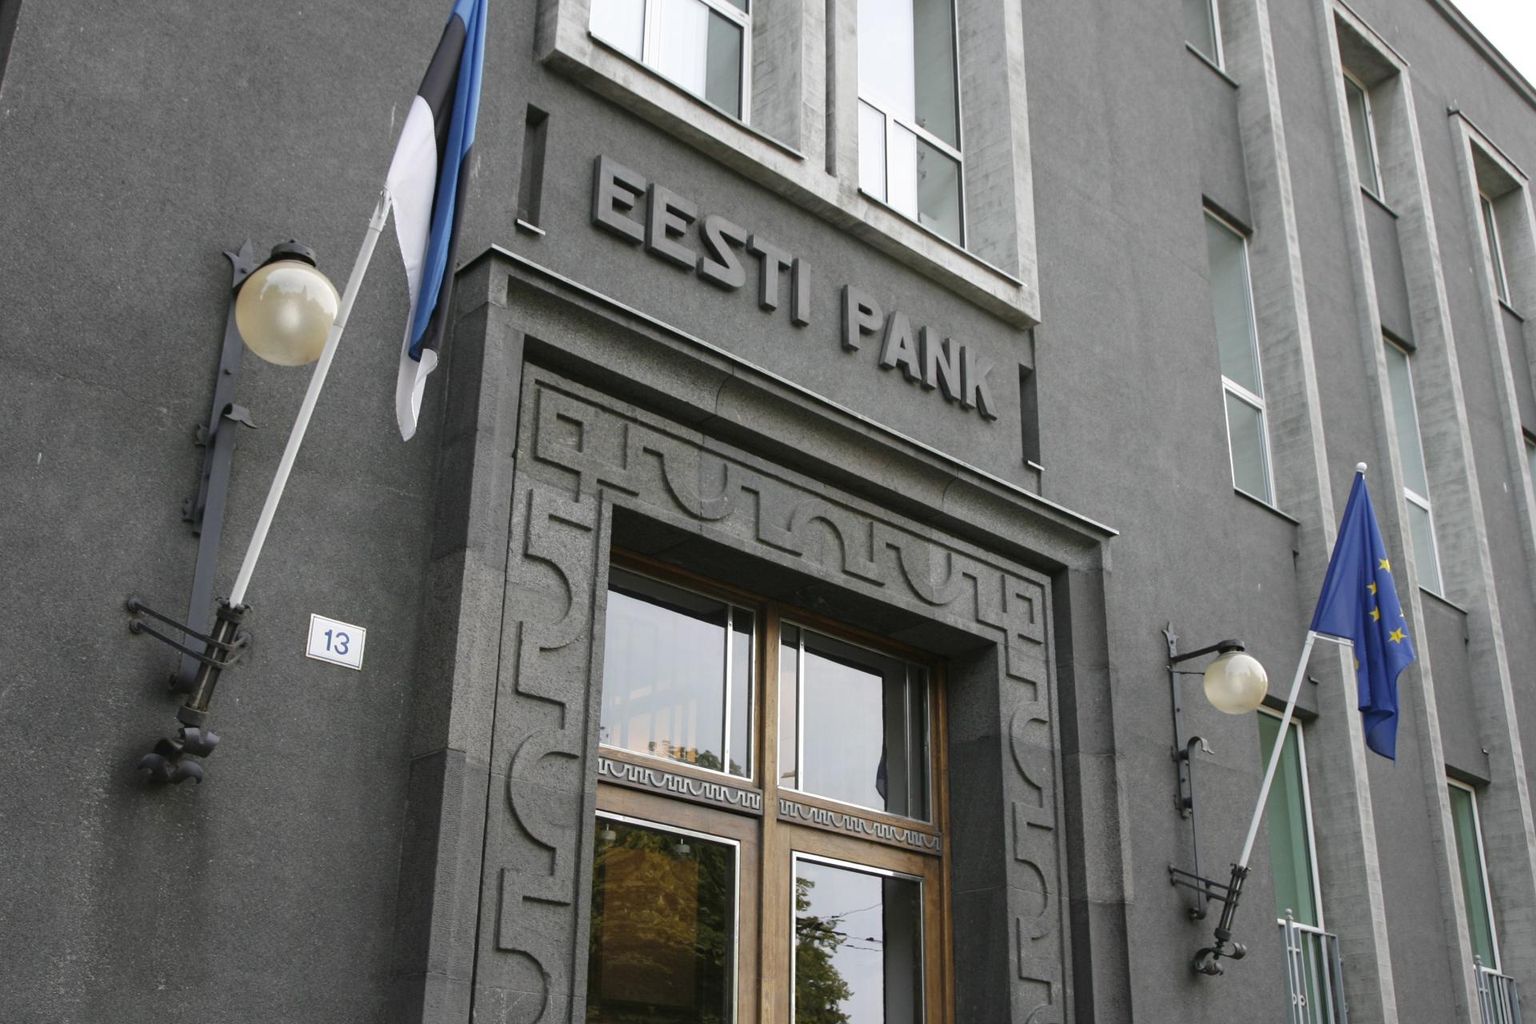 Eesti Panga hinnangul on tänavu kevadel finantssektori toimimist ohustavad riskid suured, kuid ettevõtted ja eraisikud on oma rahaliste kohustustega seni hästi toime tulnud. Finantsstabiilsuse riske vähendab tugev pangandussektor, mis on hästi kapitaliseeritud ja kasumlik.